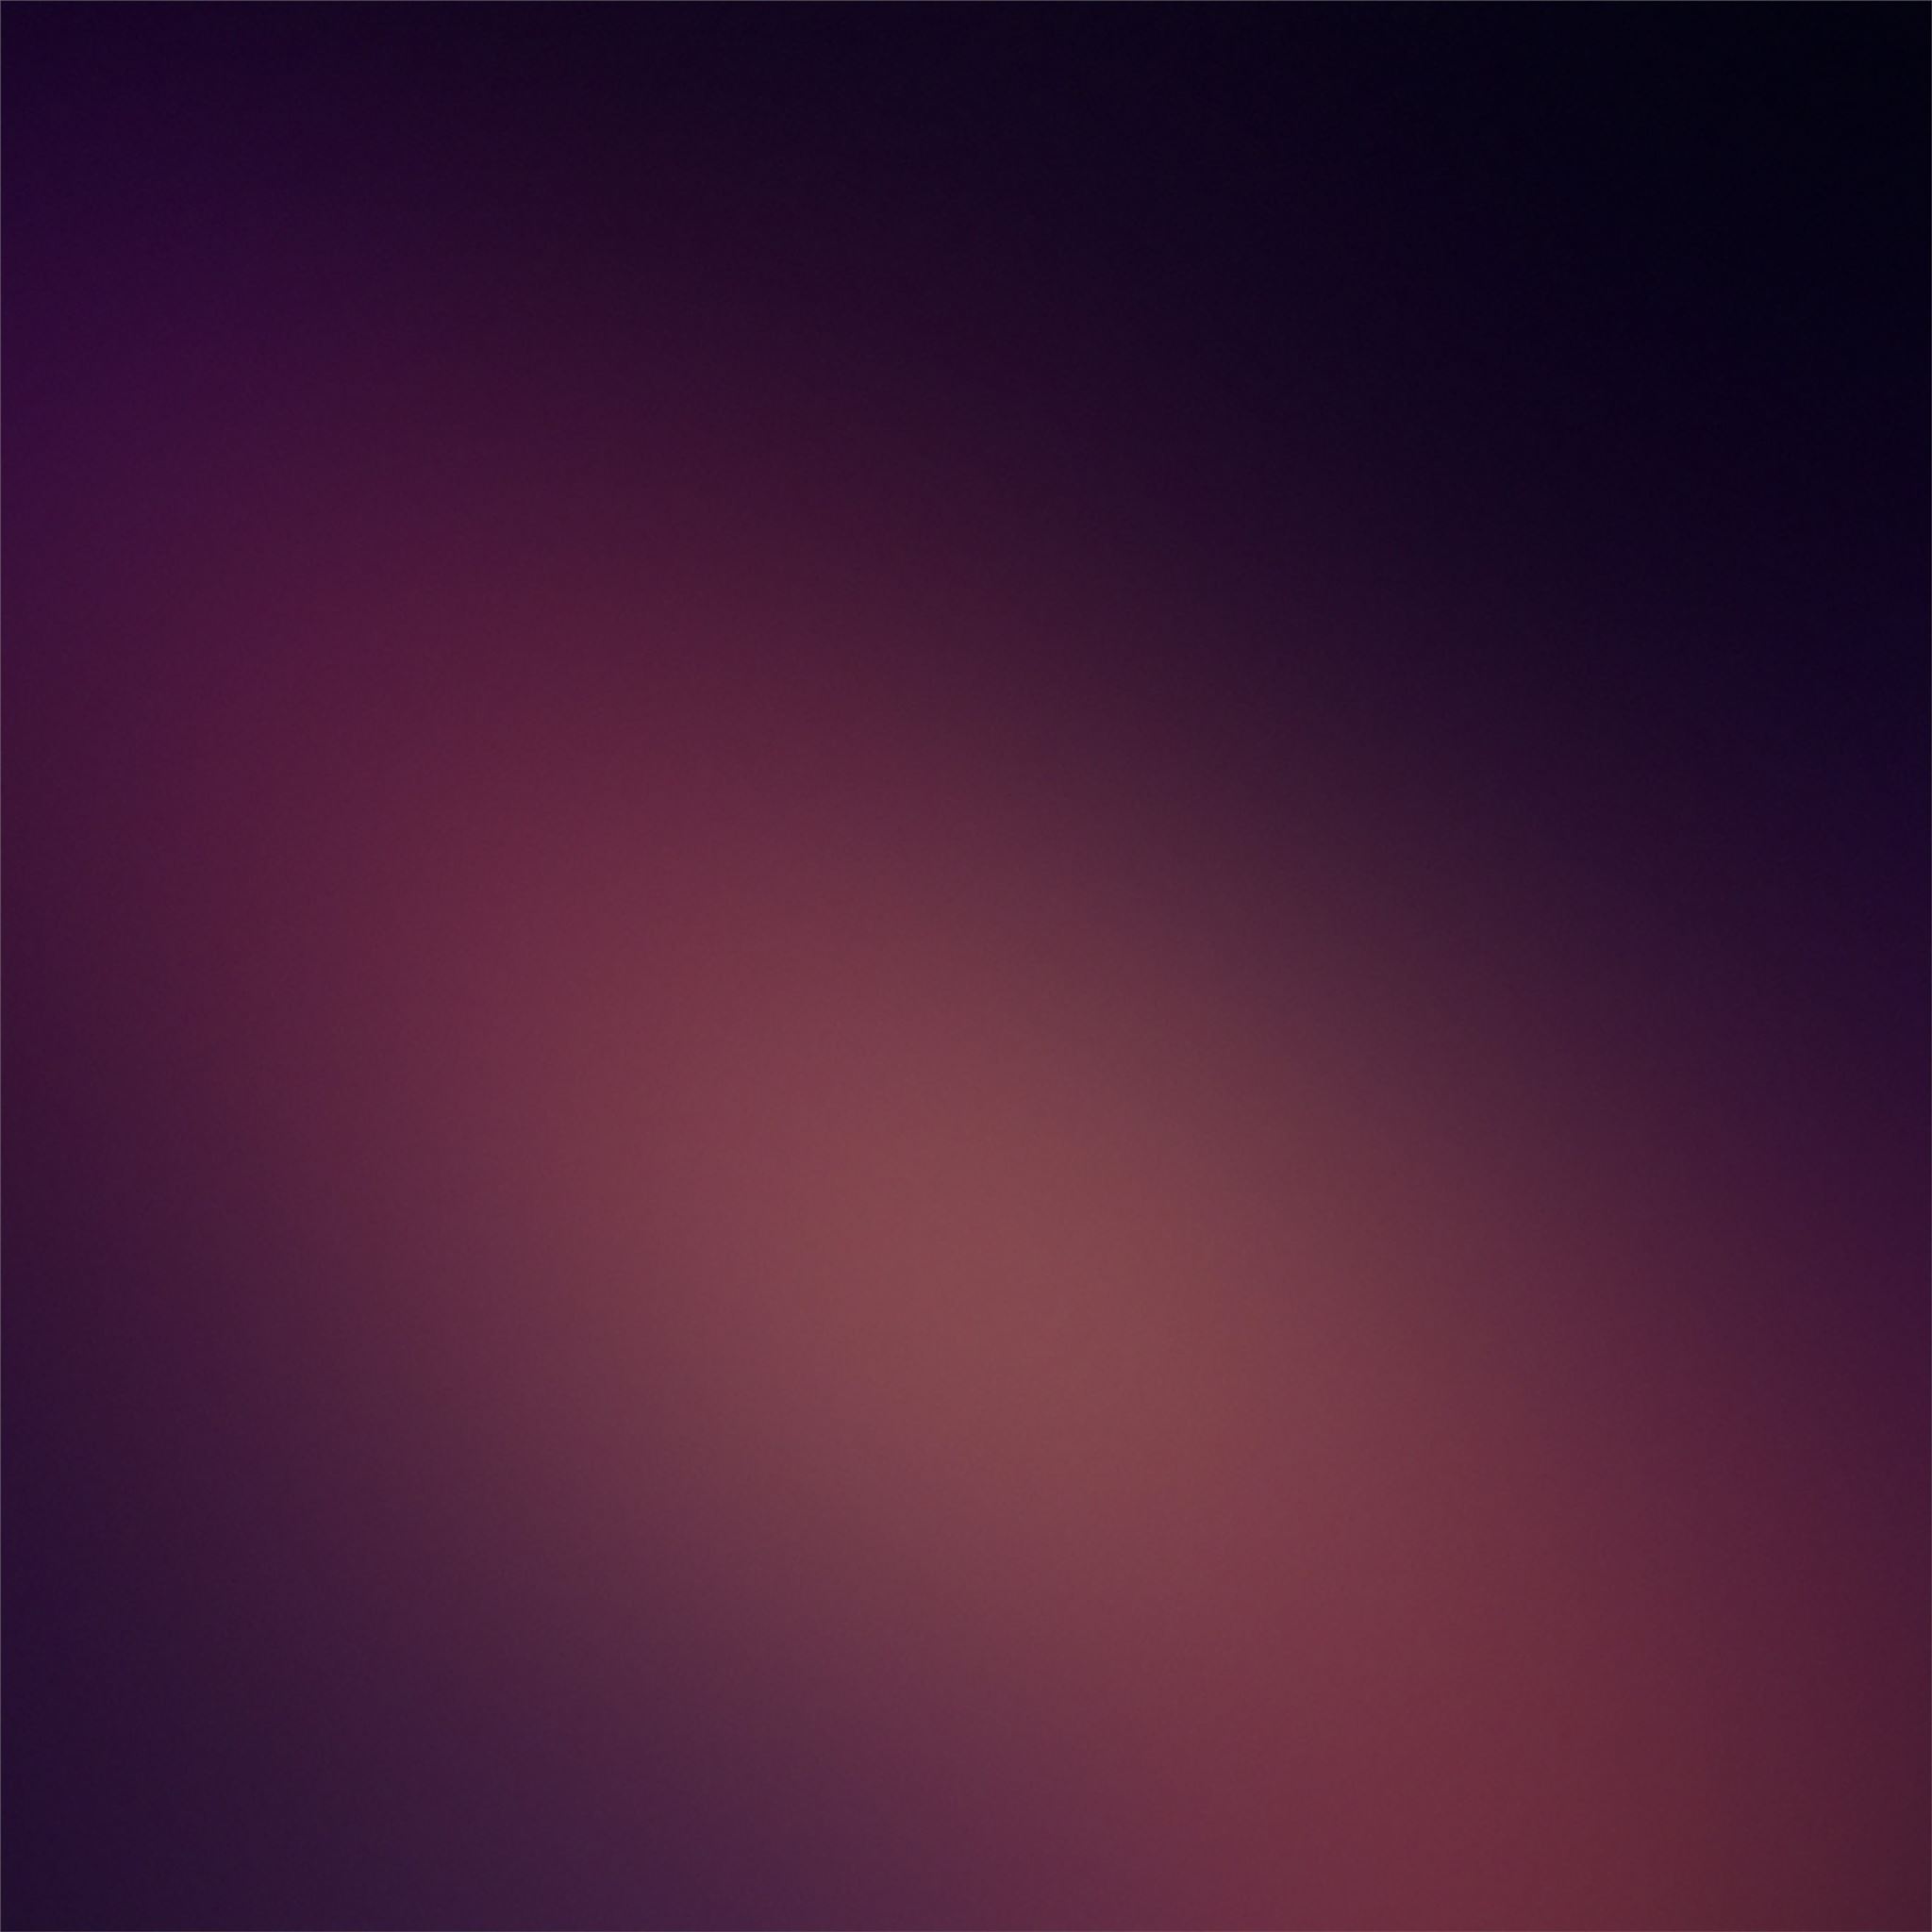 dark minimalist blur 4k iPad Wallpapers Free Download